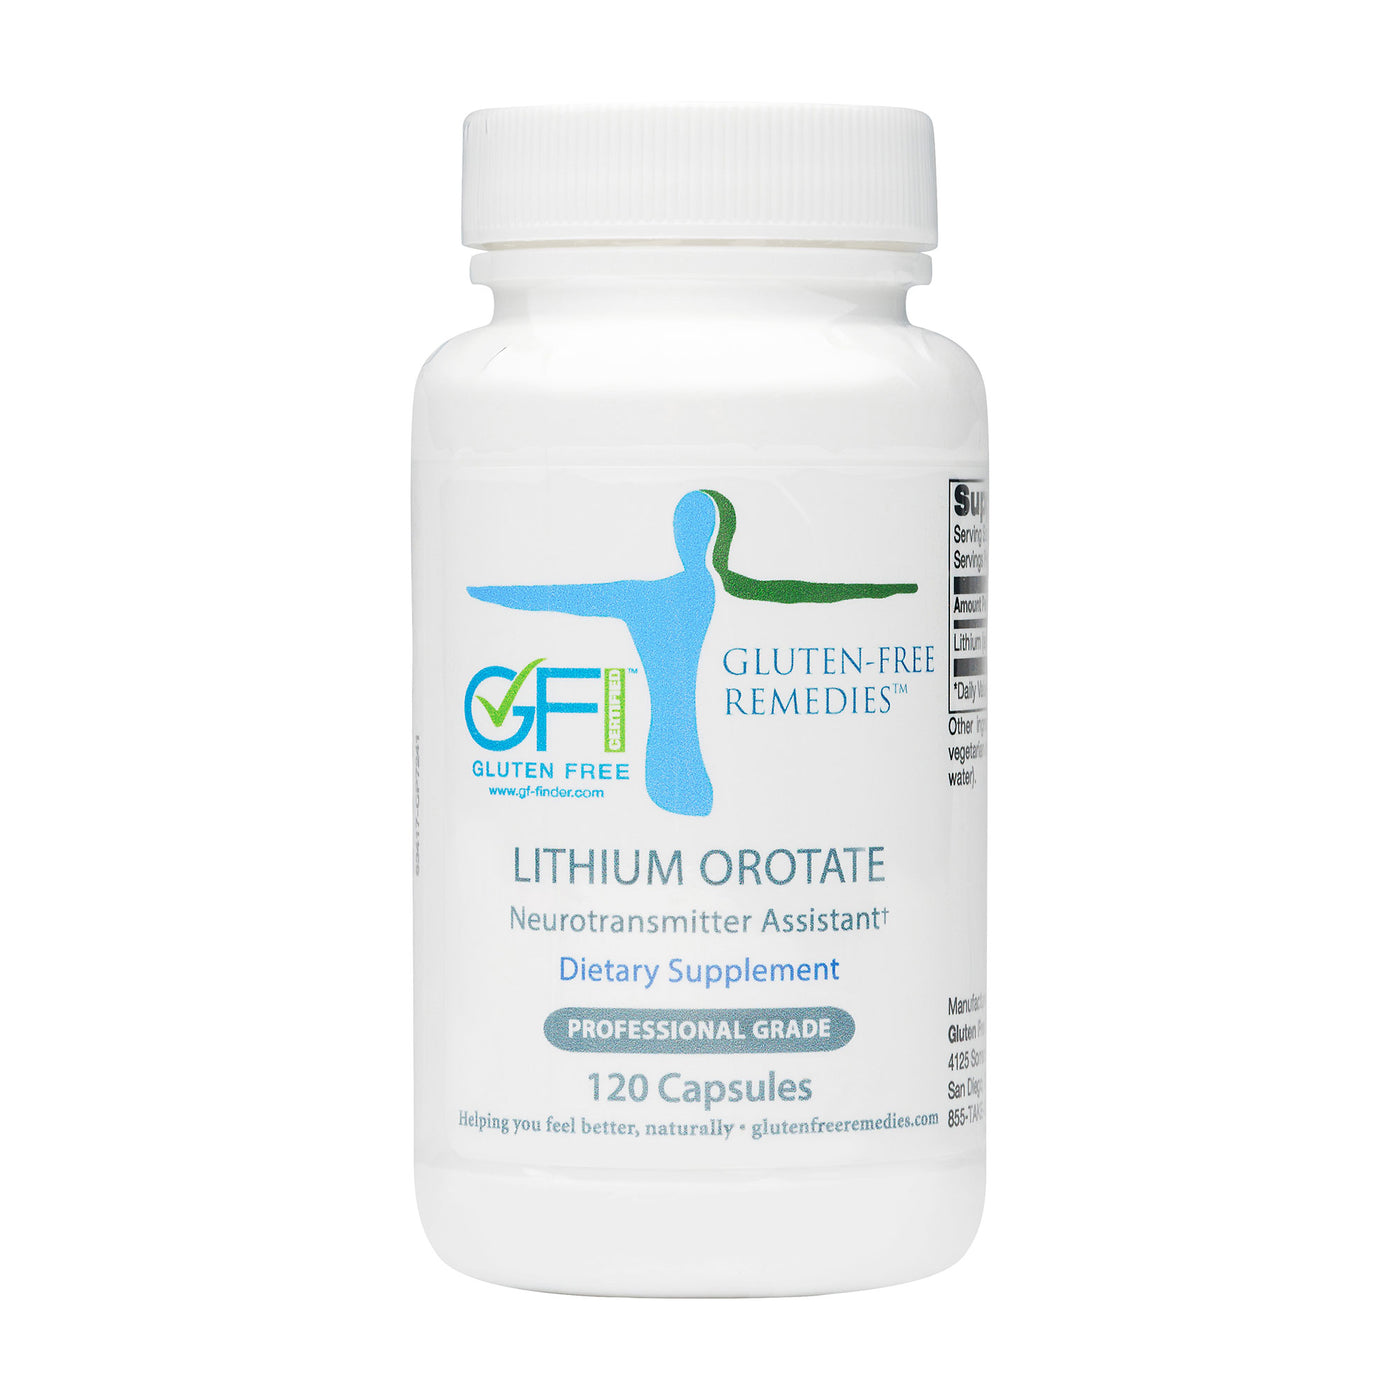 Gluten Free Remedies Lithium Orotate bottle